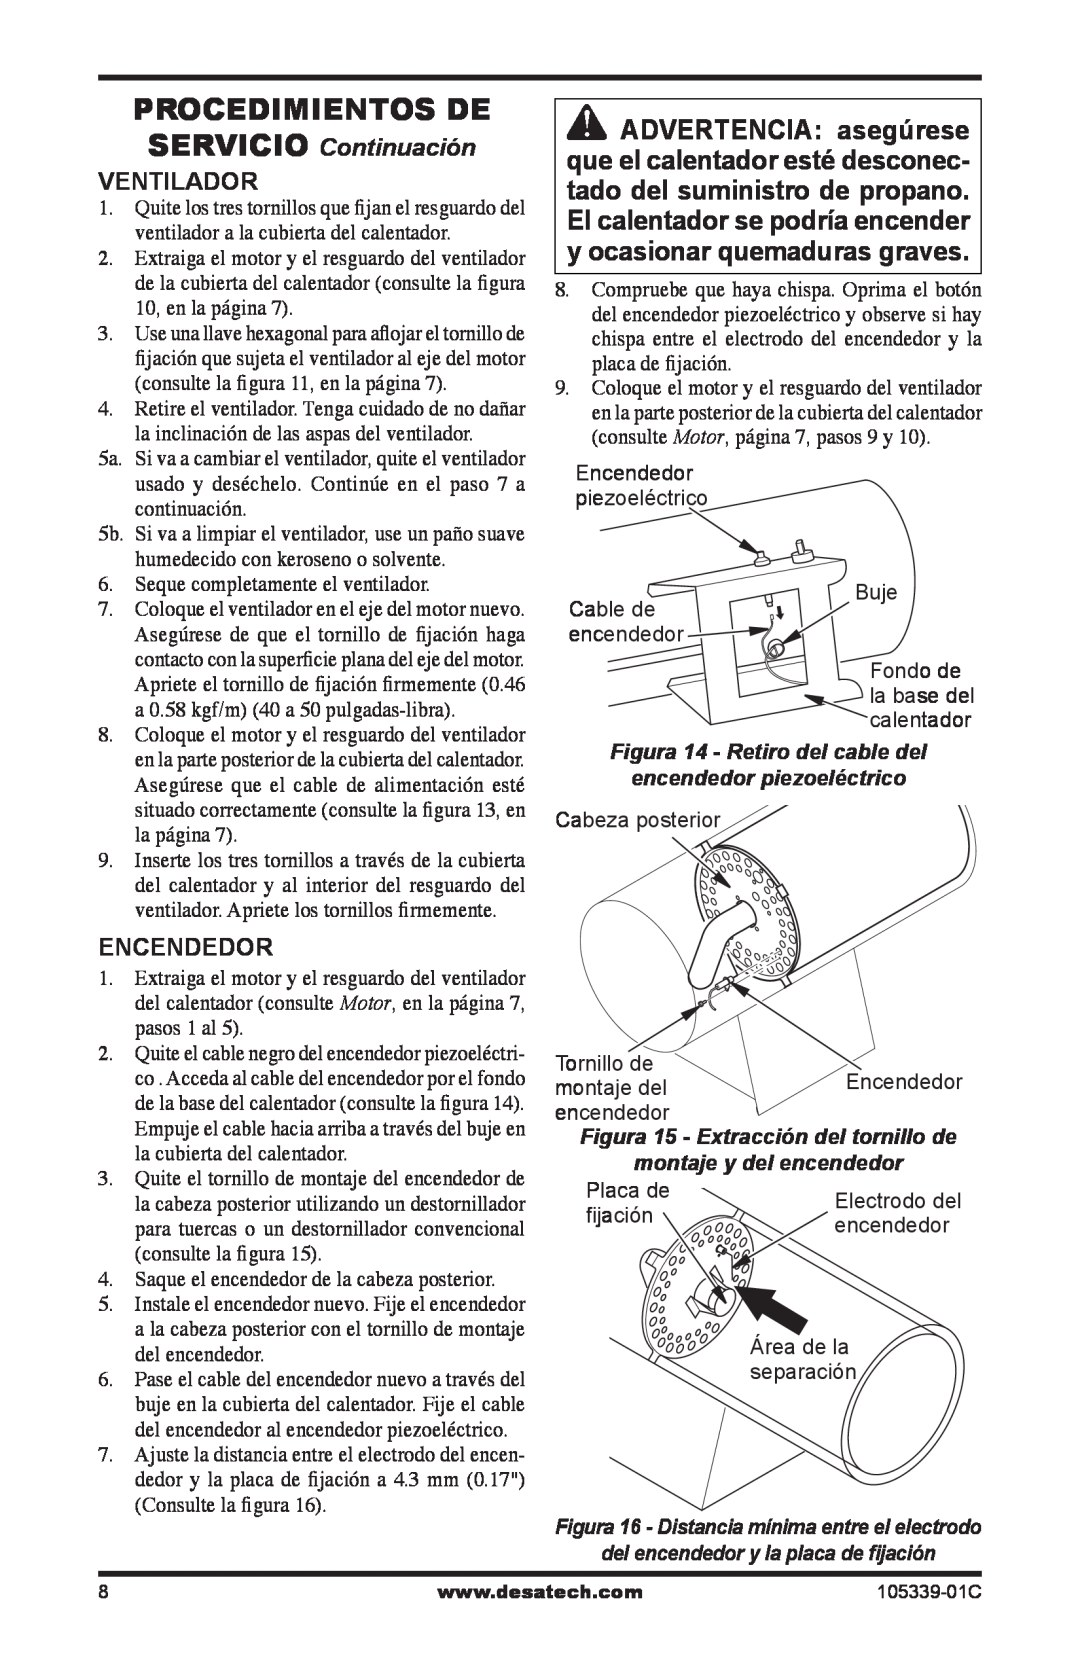 Desa RCLP50-F Procedimientos De, SERVICIO Continuación, Ventilador, Encendedor, Figura 14 - Retiro del cable del 